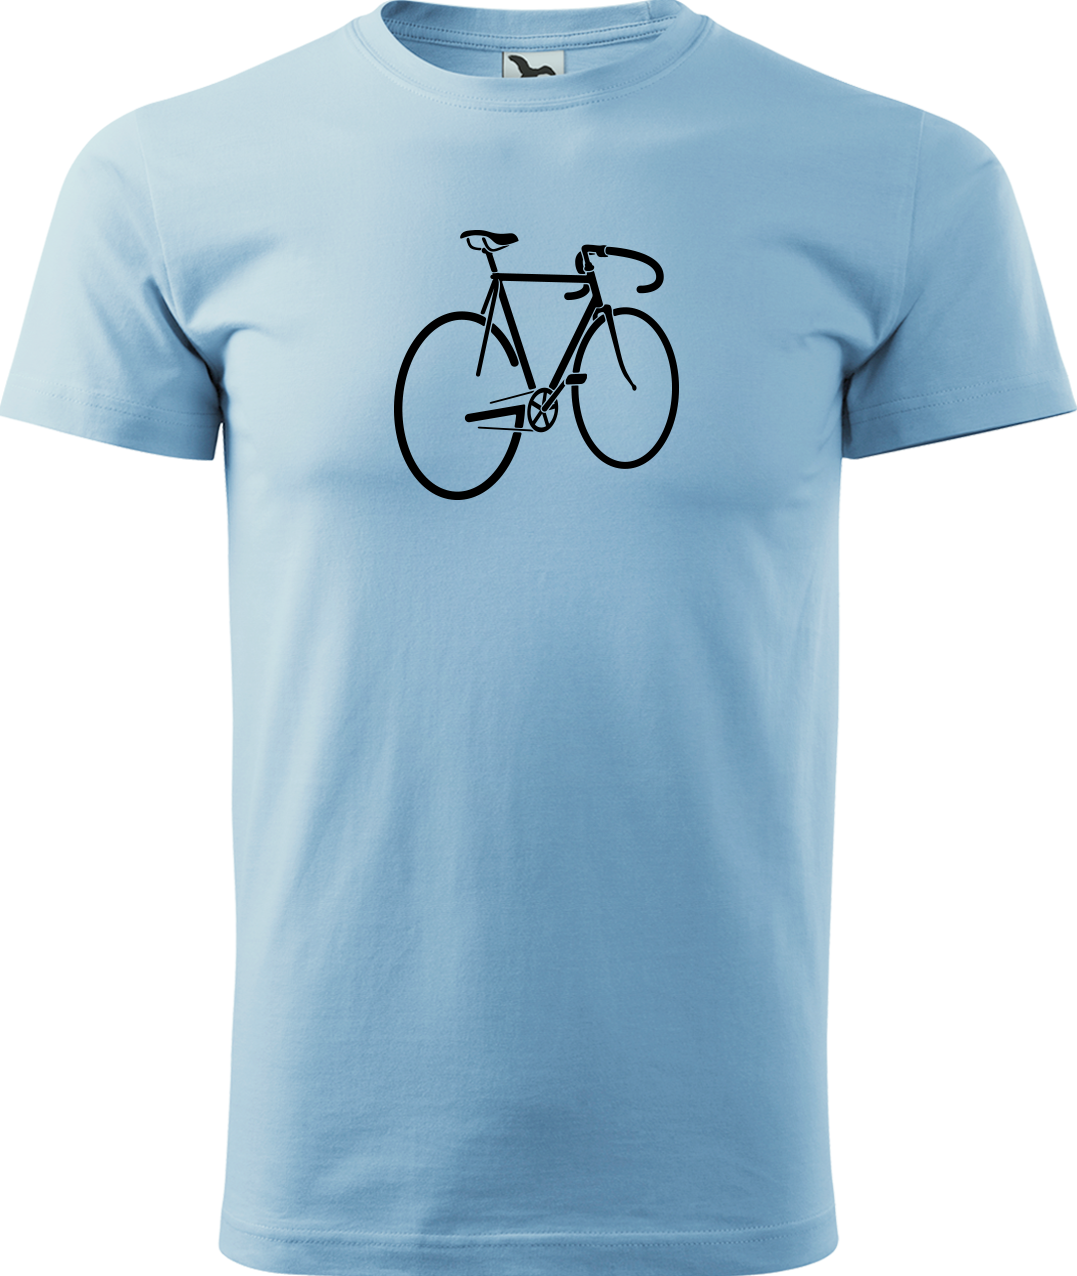 Pánské tričko s kolem - Pánské kolo Velikost: M, Barva: Nebesky modrá (15)